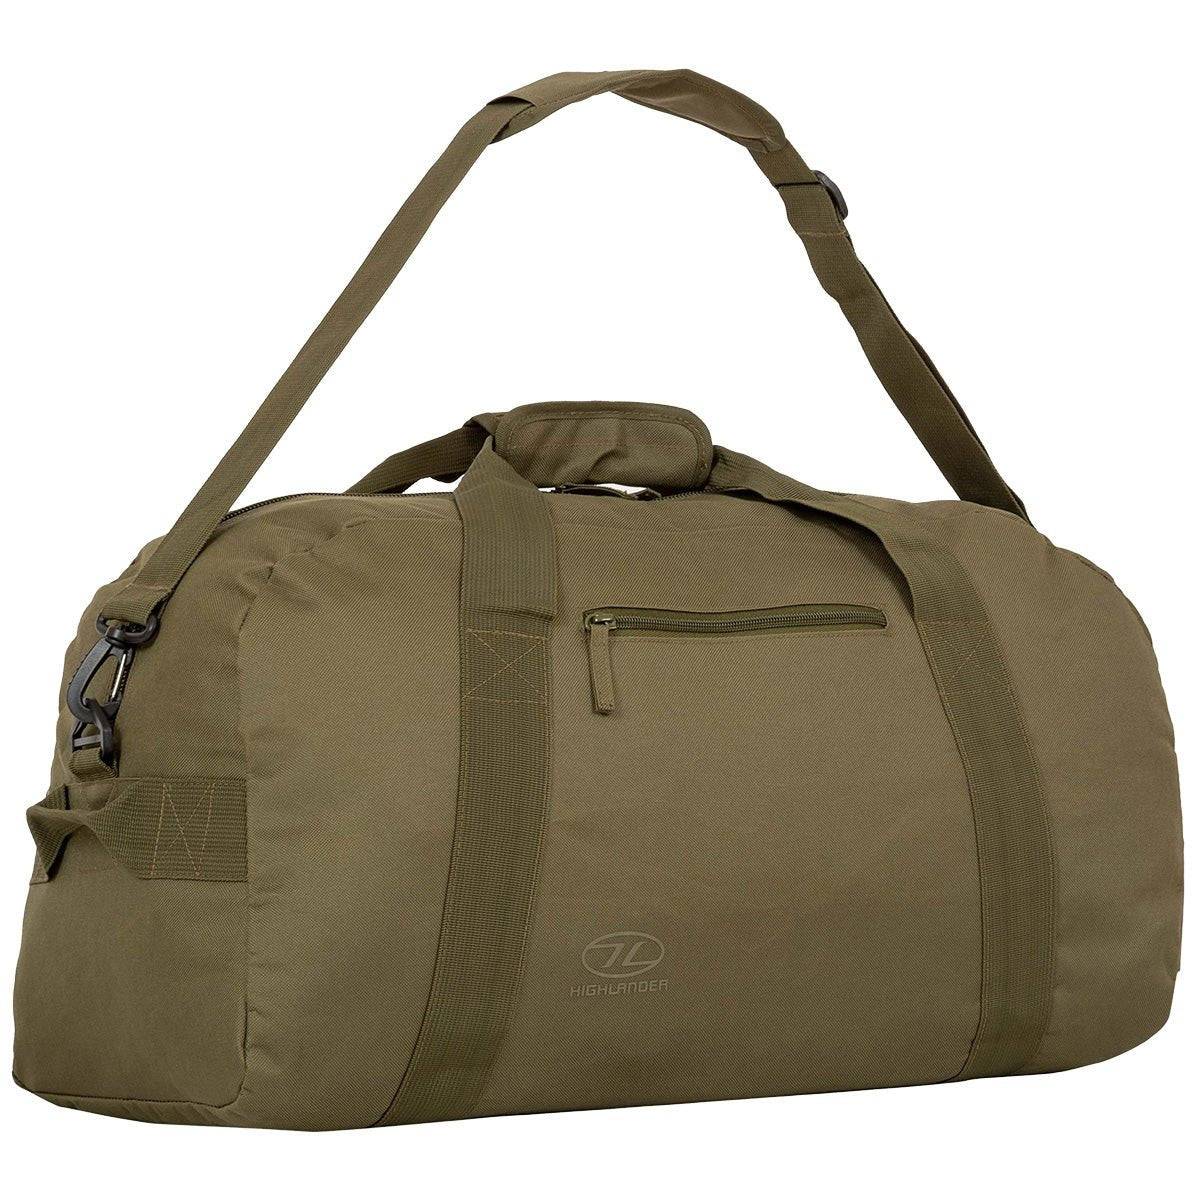 Highlander Cargo 65 Litre Carry Bag - John Bull Clothing